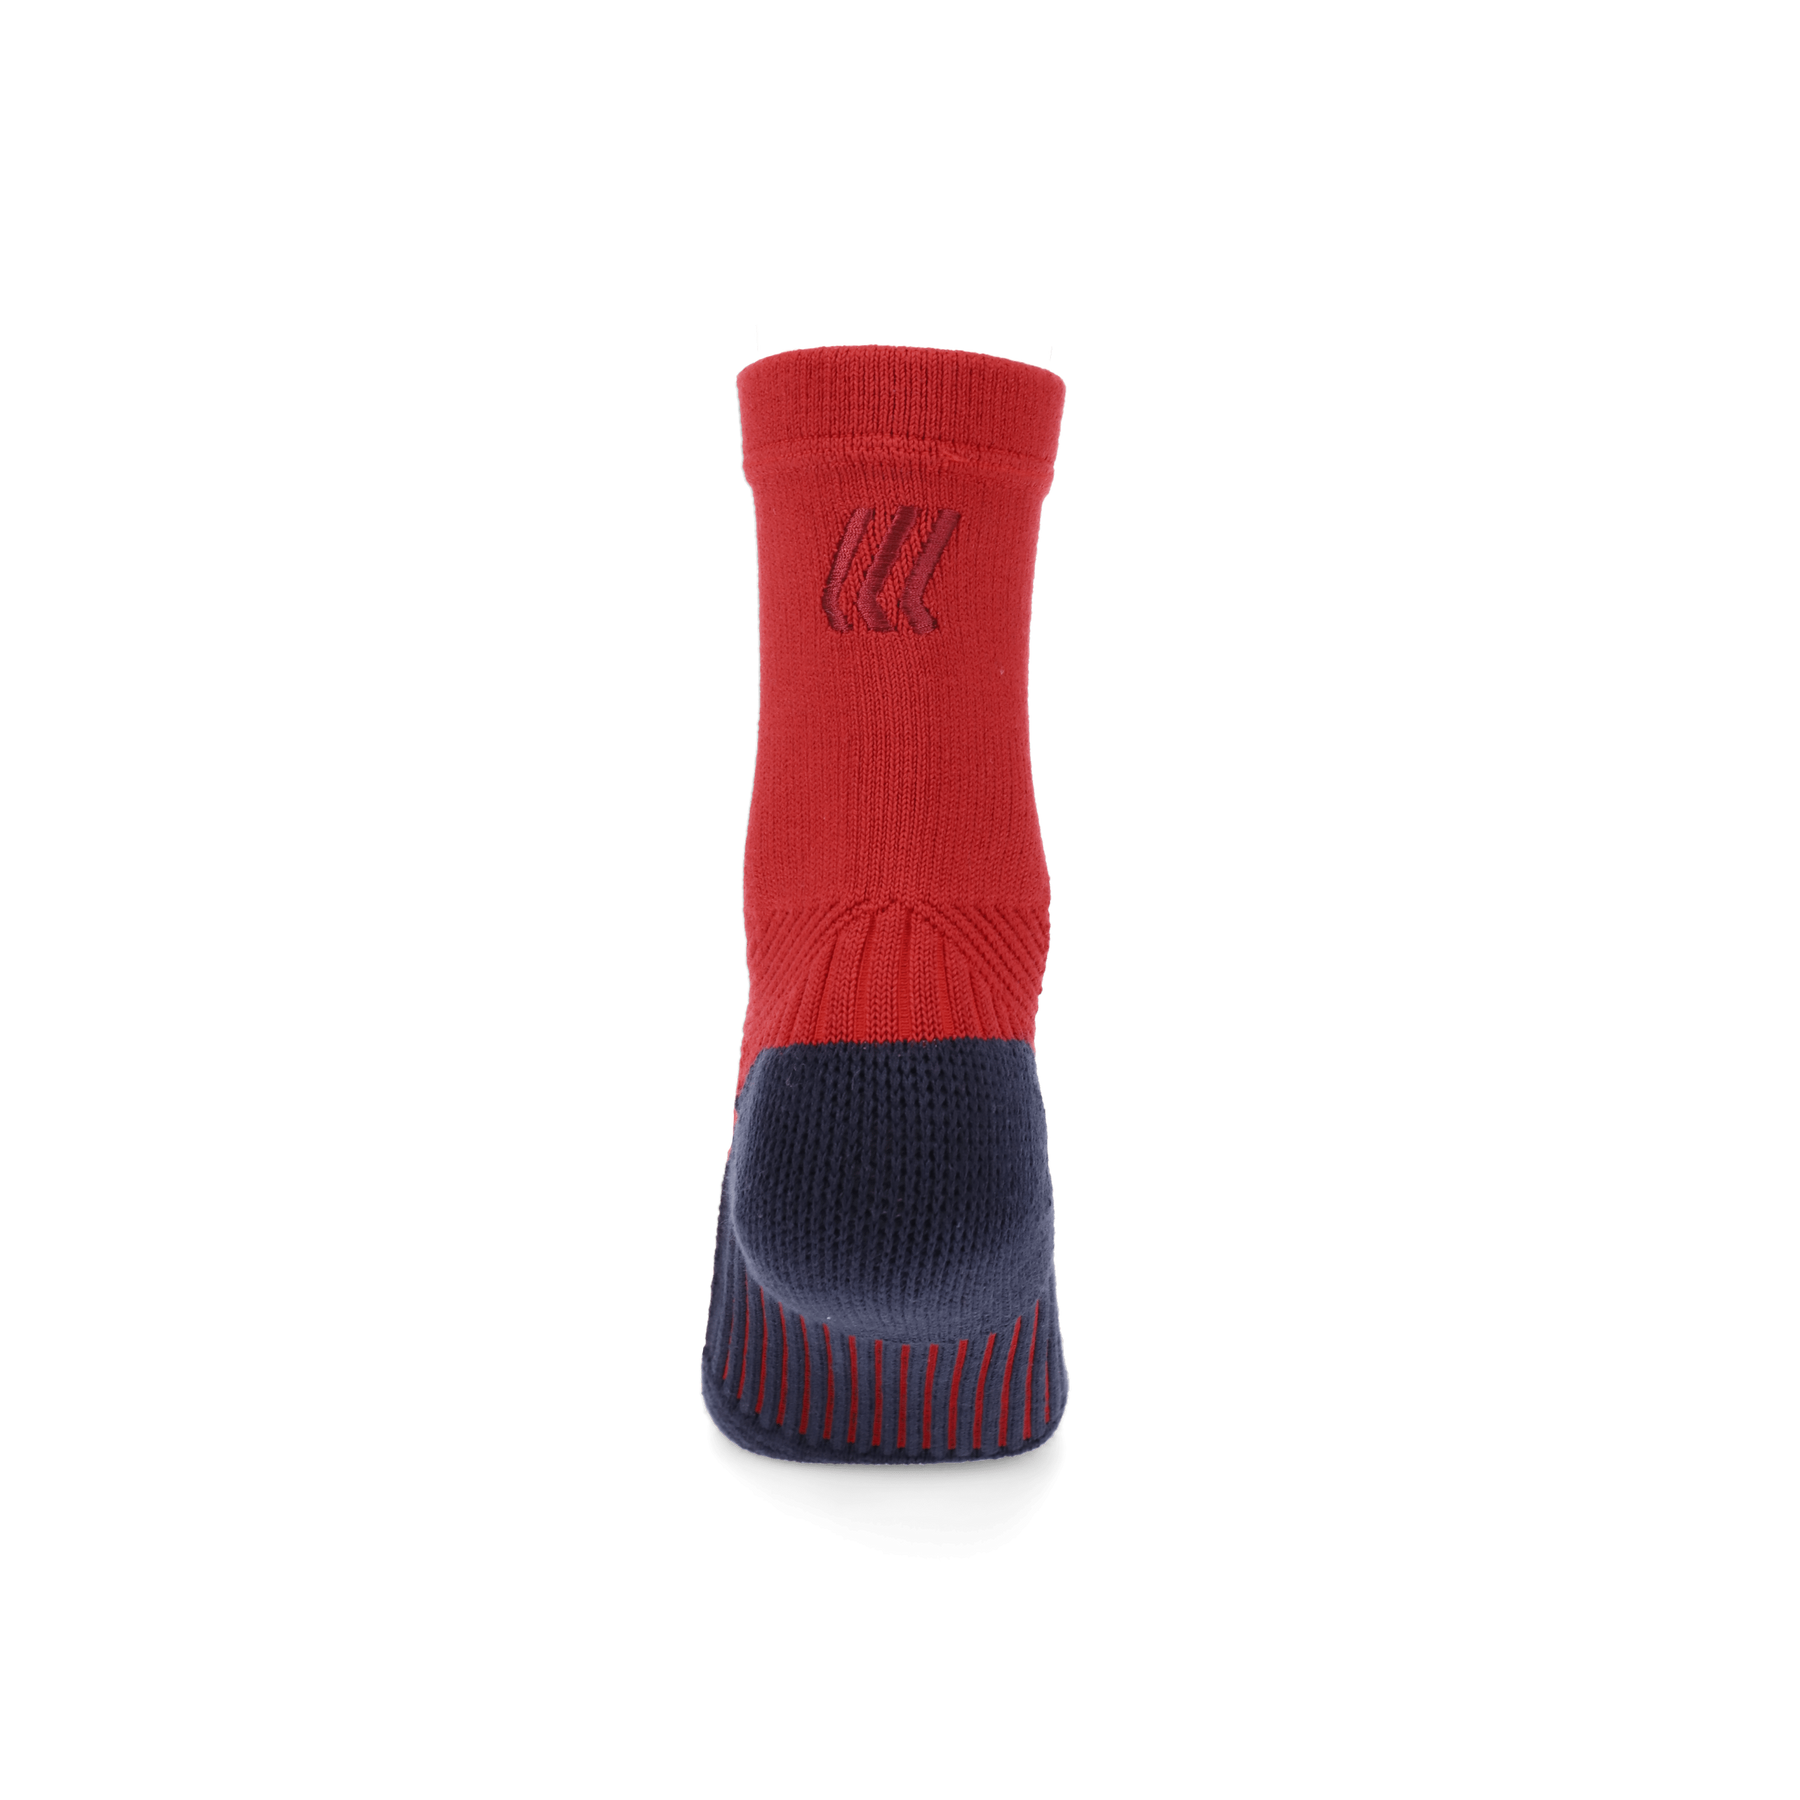 Nike NBA ELITE Crew Basketball Socks DRI-FIT Size Large. **Many Colors**